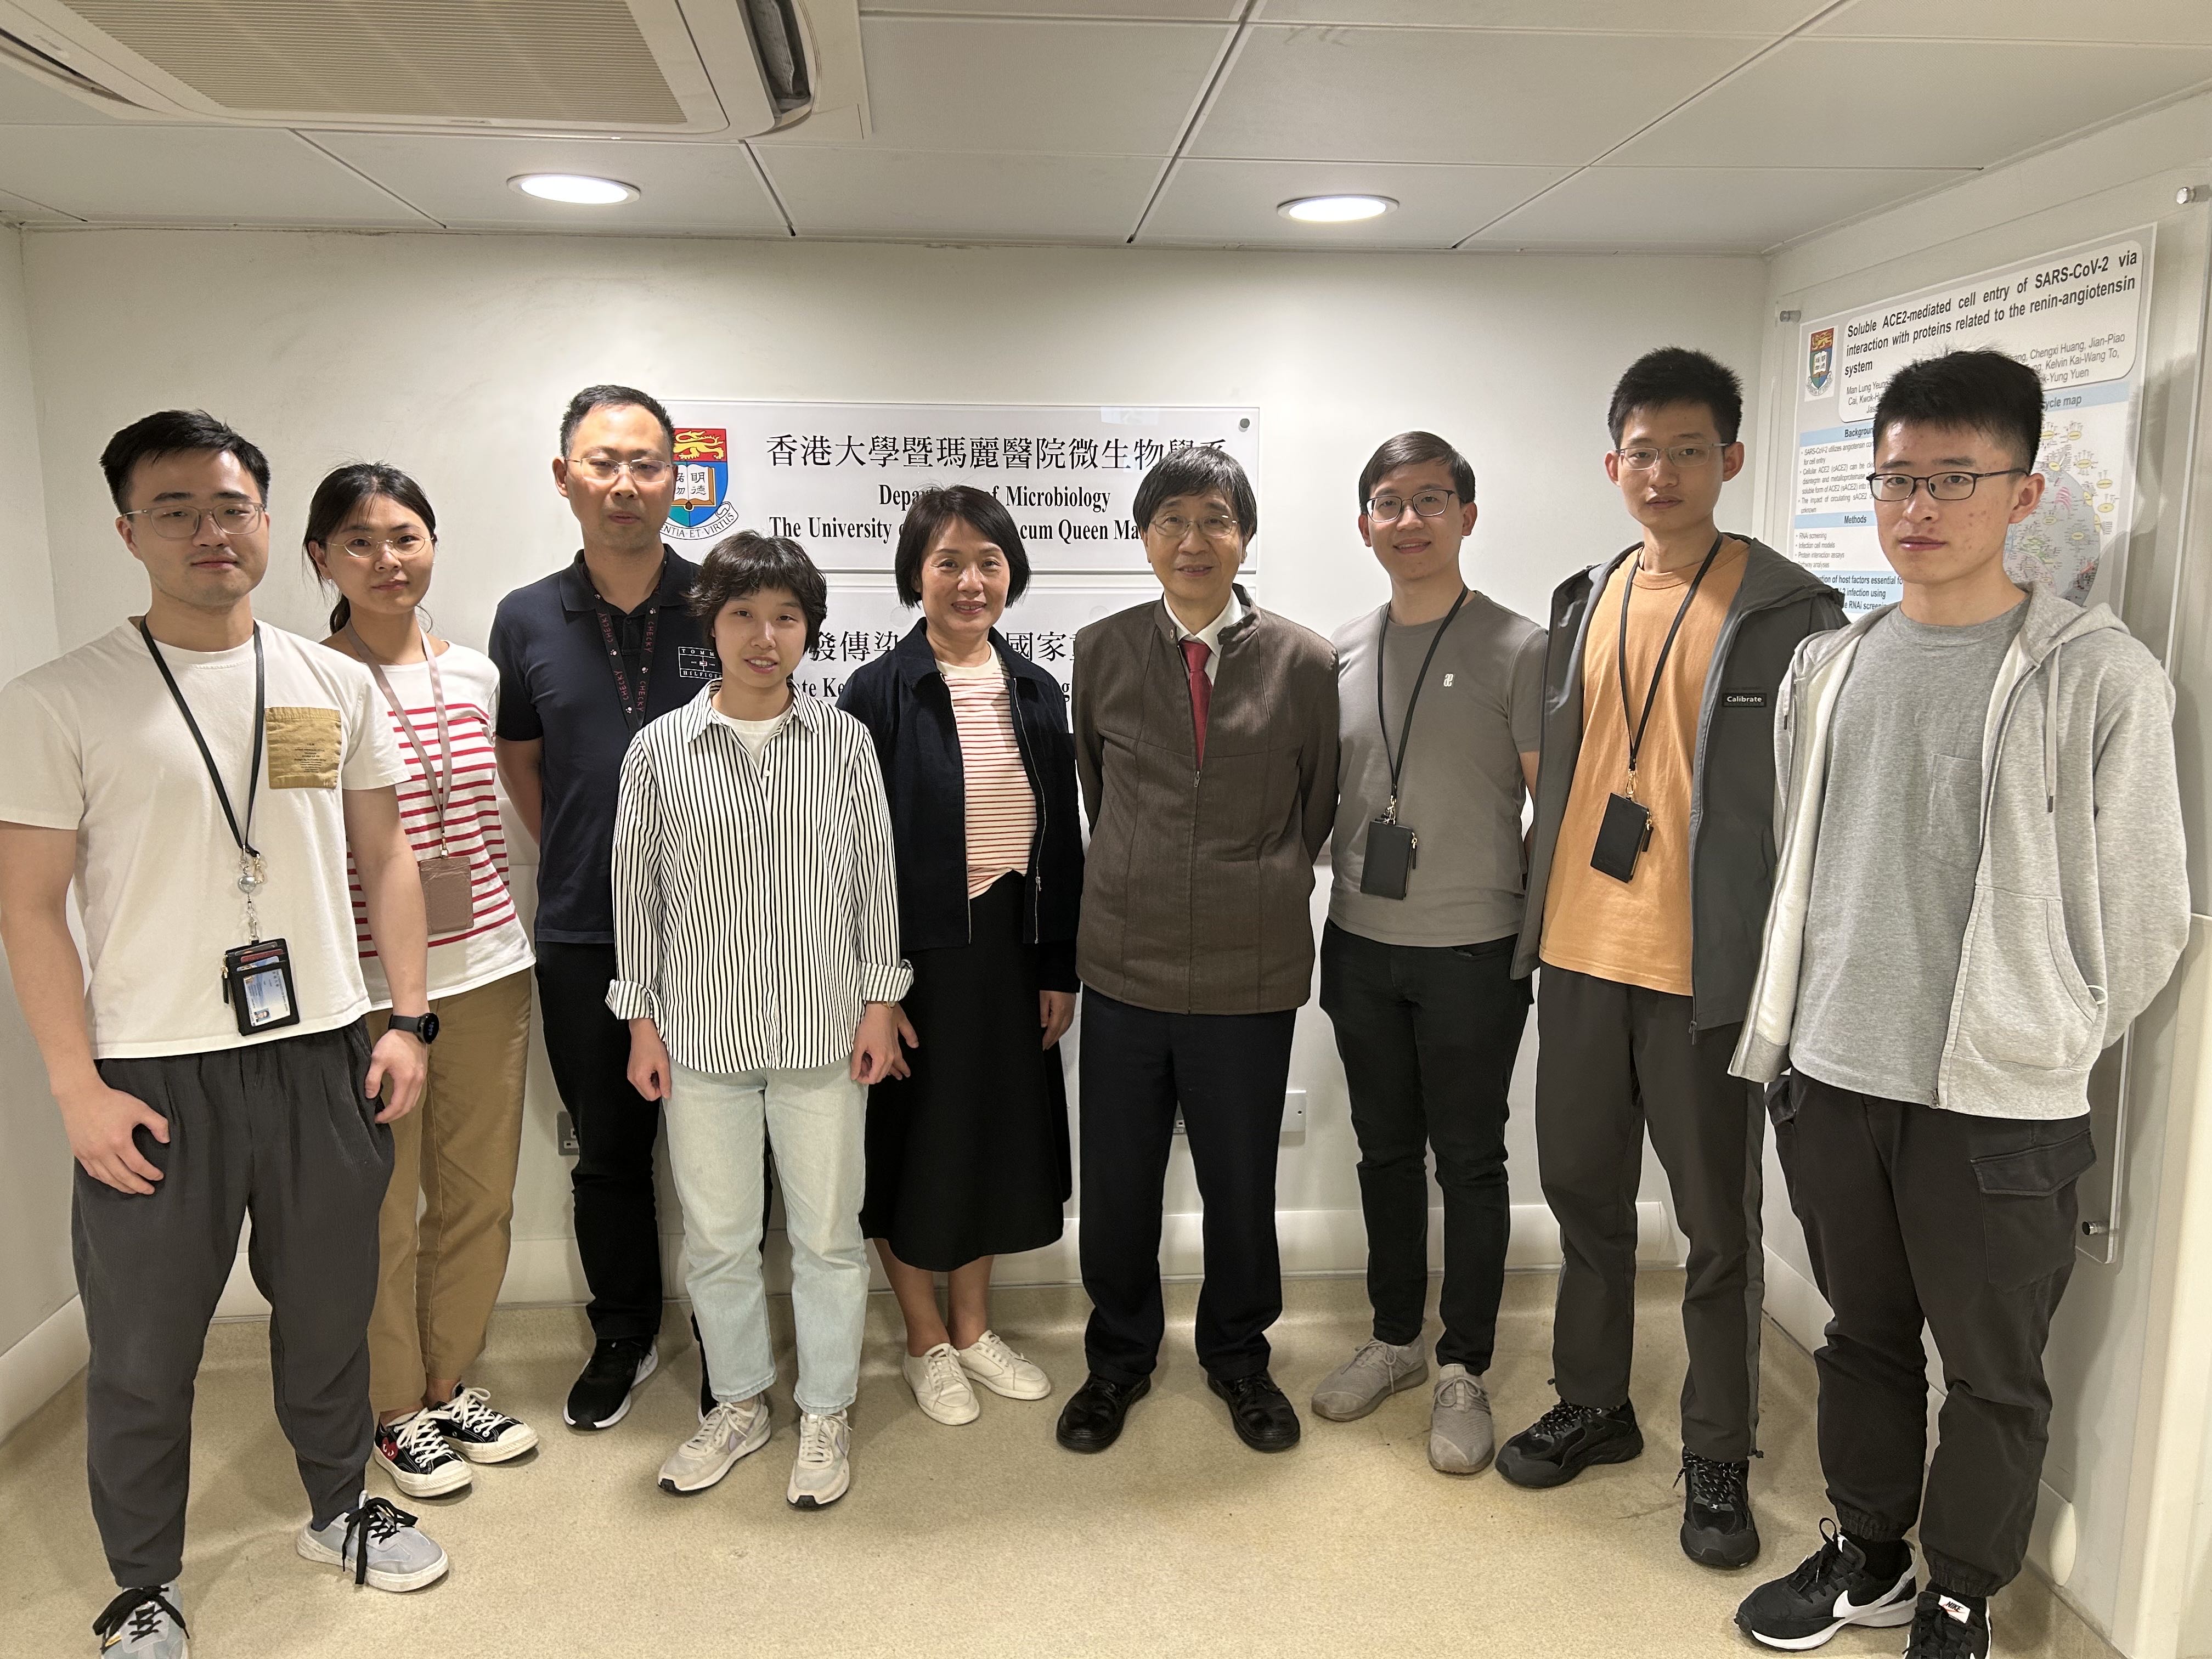 A research team from HKUMed uncovered a novel mechanism for the high transmissibility of SARS-CoV-Omicron variant. The research team members include: (from left) Yu Yifei, Huang Jingjing, Dr Li Cun, Wan Zhixin, Dr Zhou Jie, Professor Yuen Kwok-yung, Dr Chiu Man-chun, Zhu Xiaoxin and Zhang Shuxin.